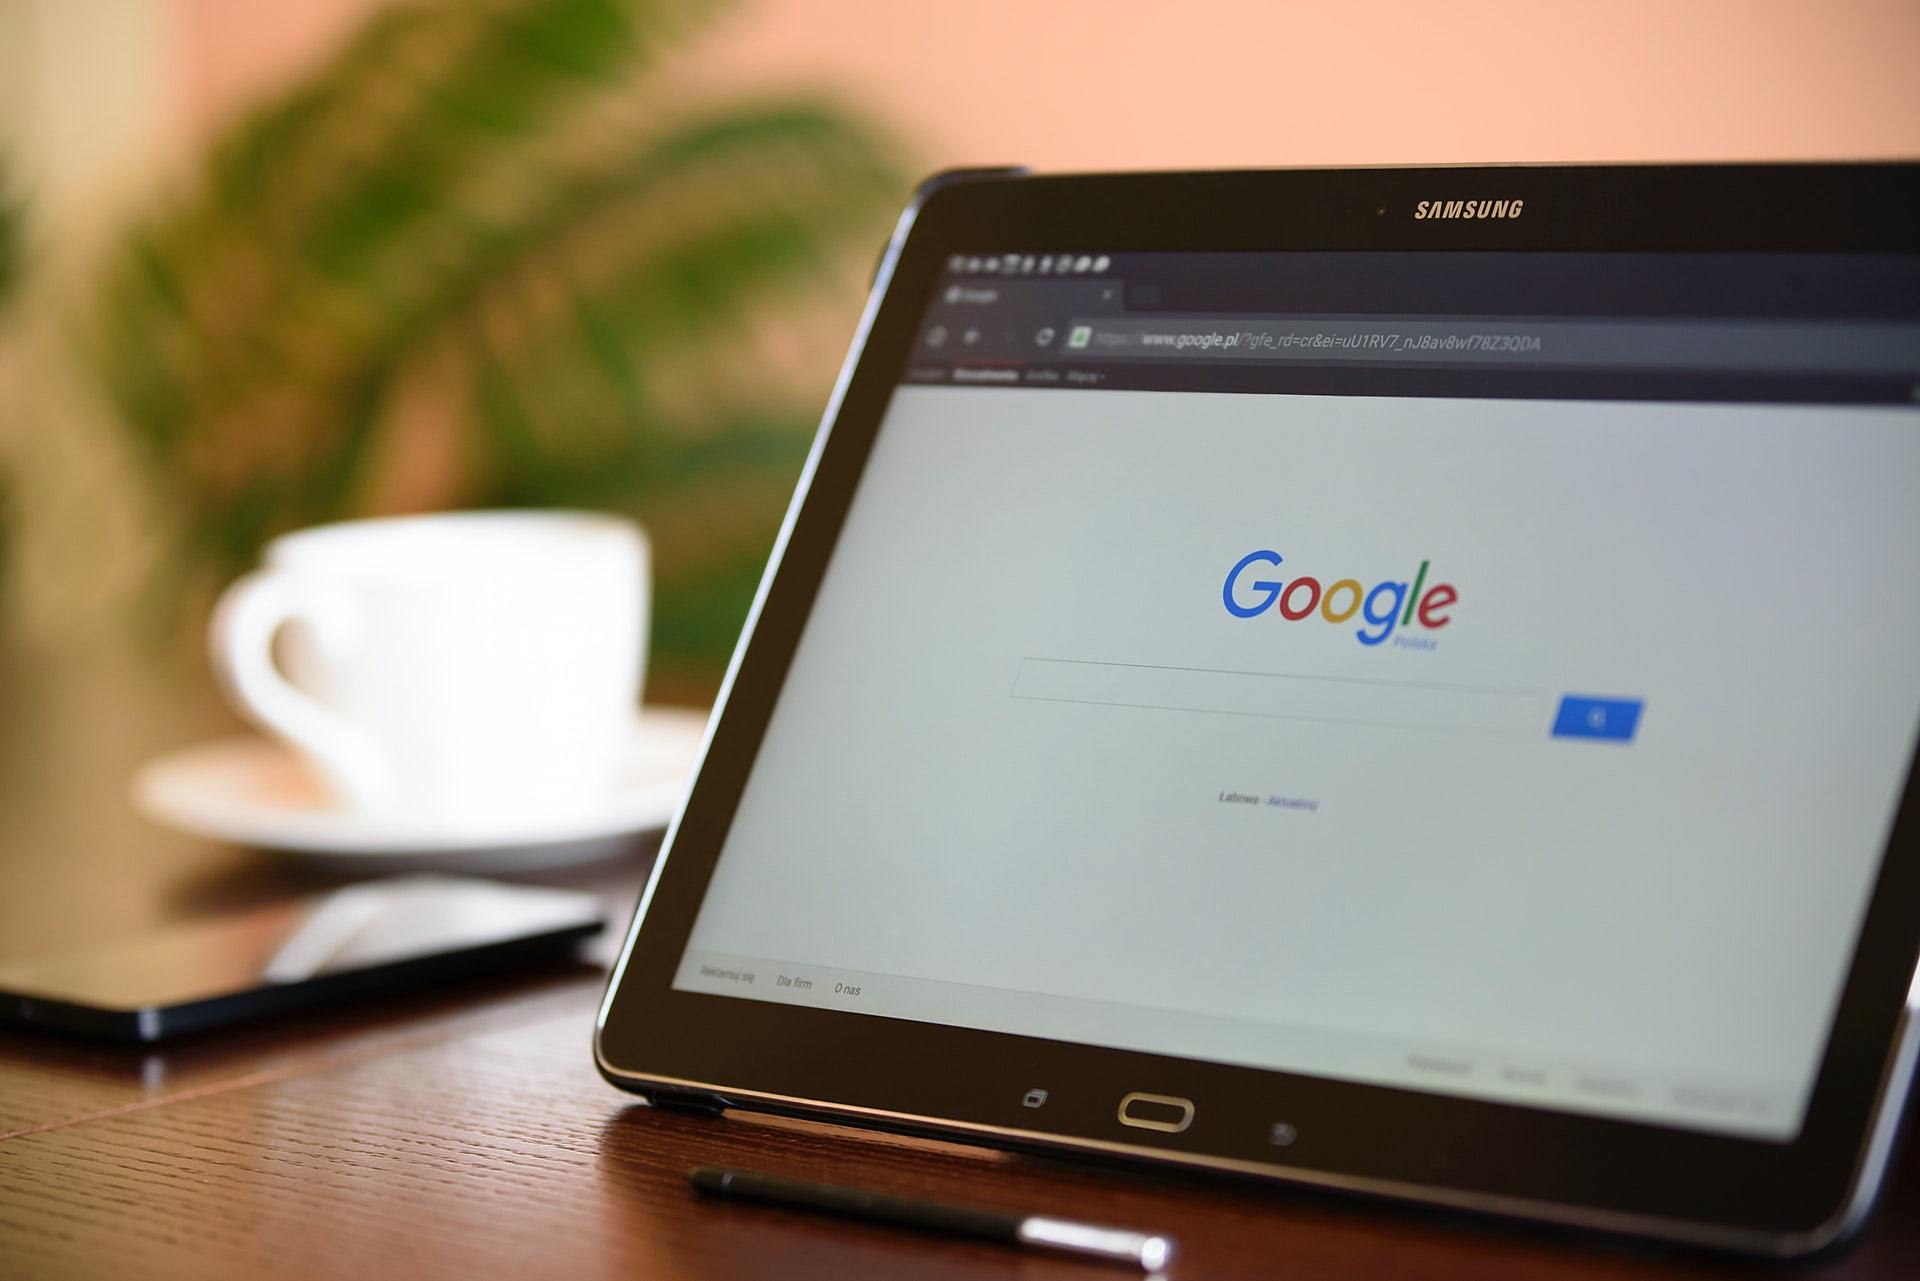 Descubra aqui 4 dicas de como usar o Google Meu Negócio